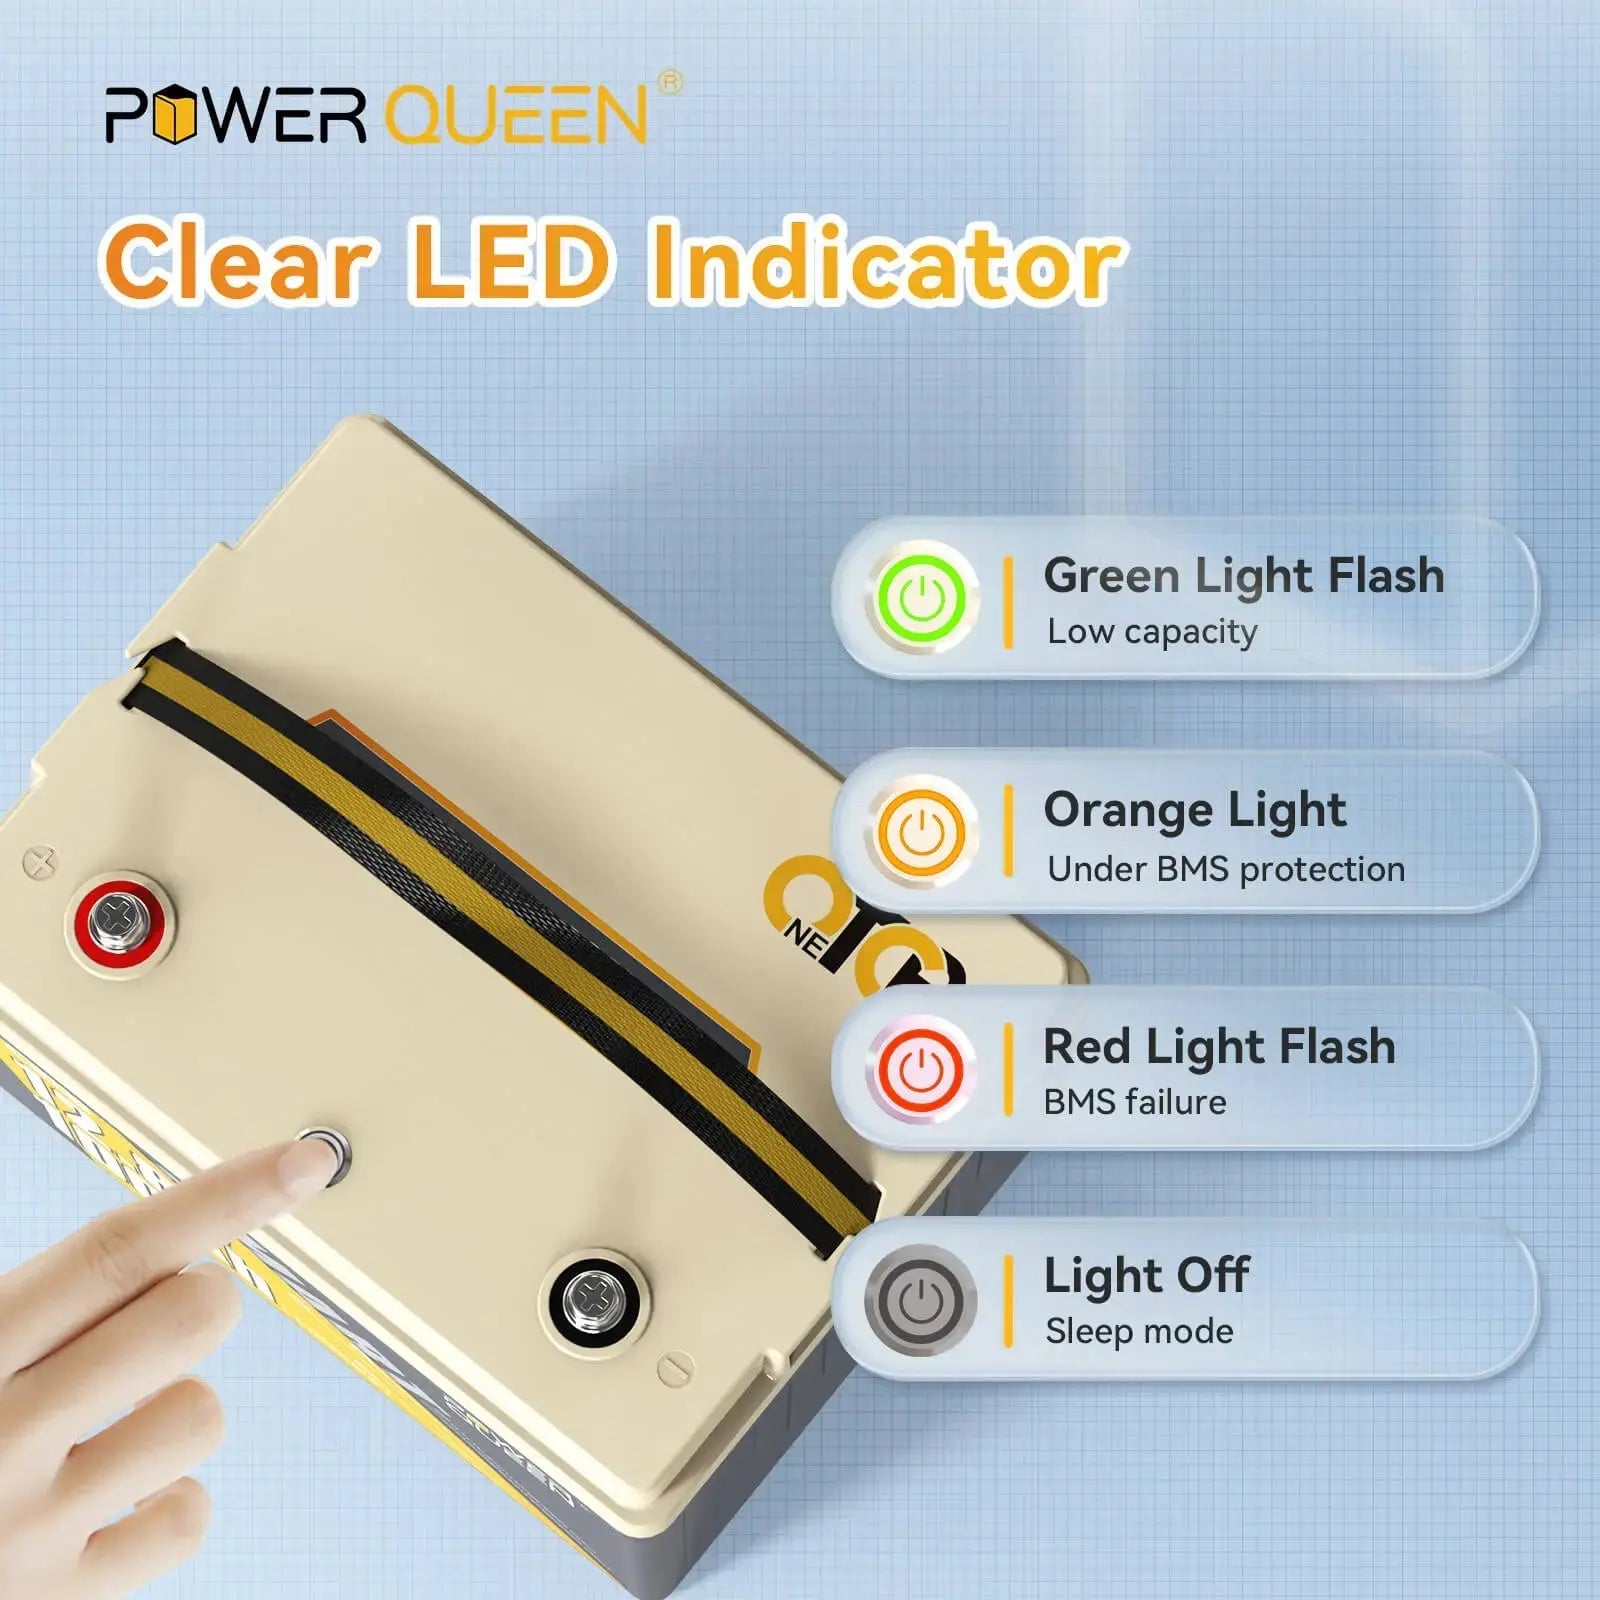 Power Queen 12V 100Ah OTCB Smart LiFePO4 Battery 